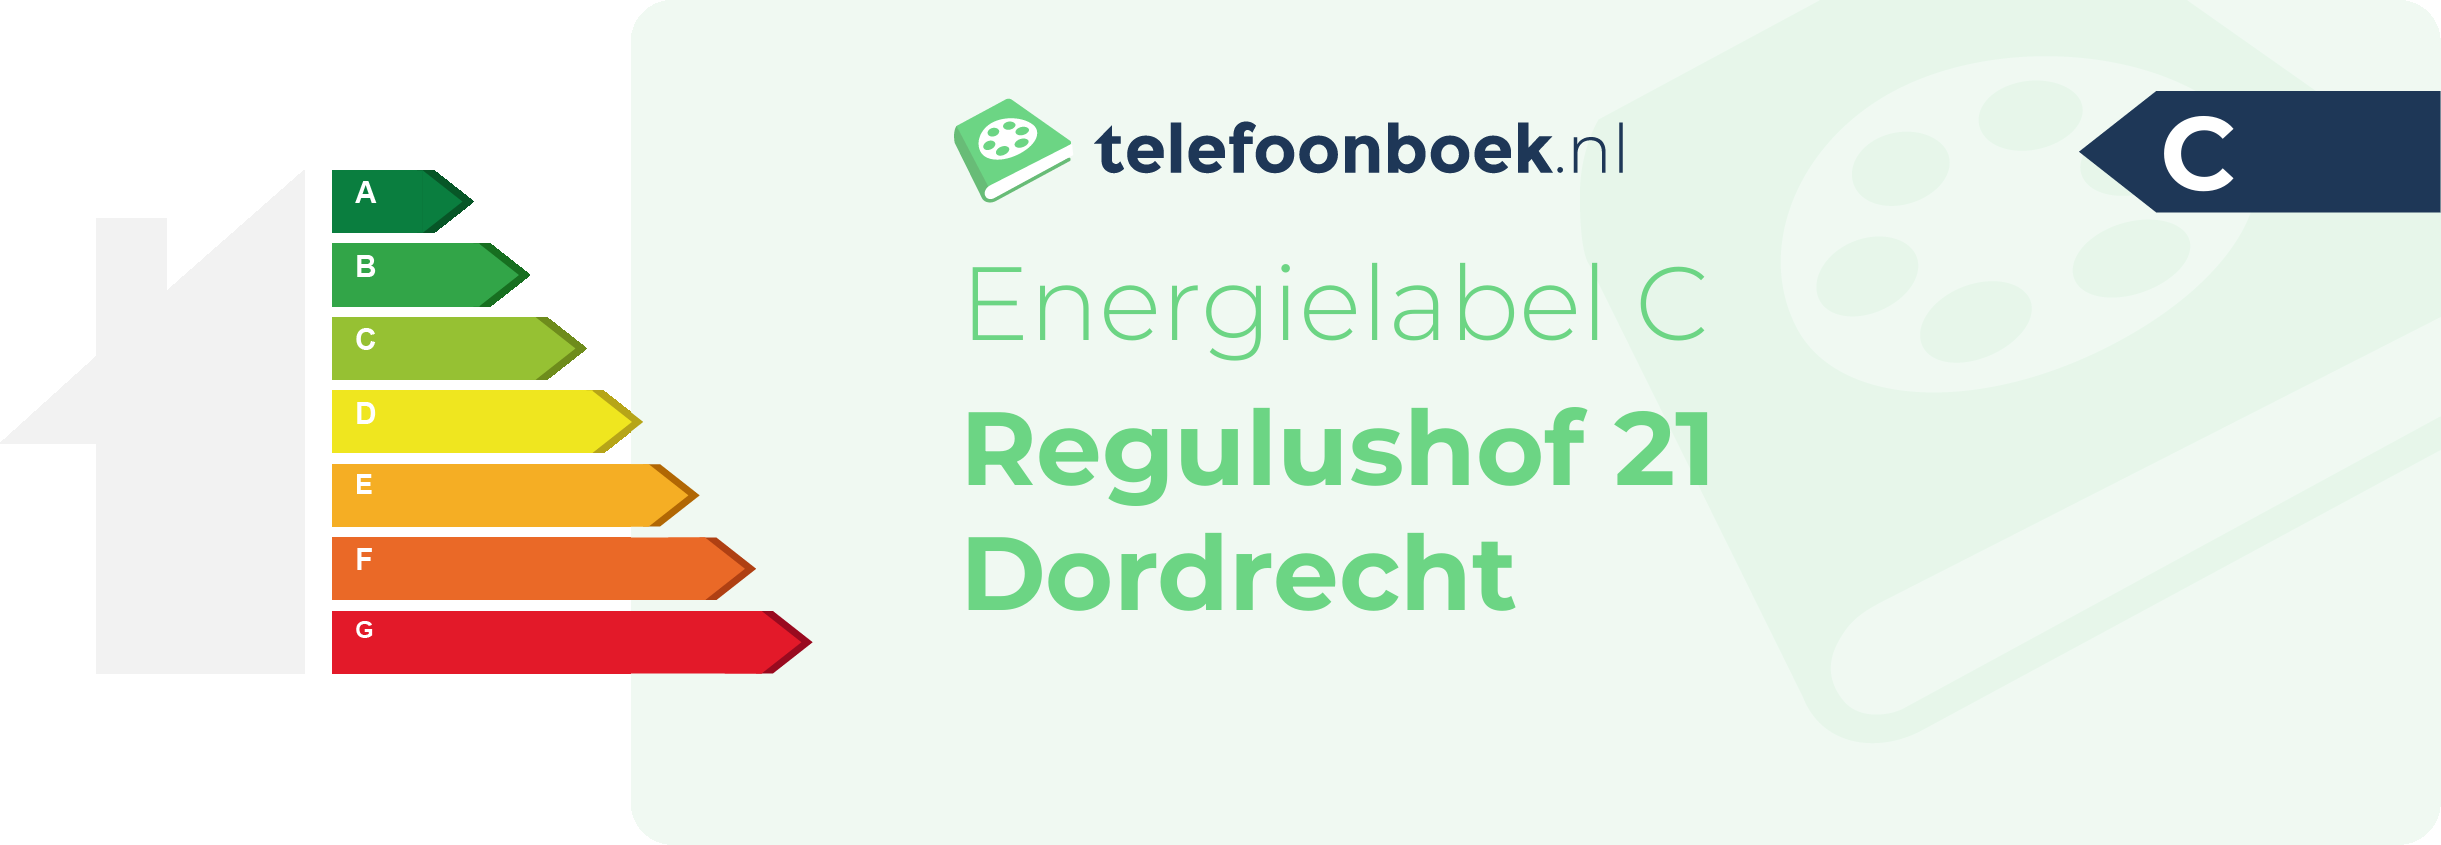 Energielabel Regulushof 21 Dordrecht